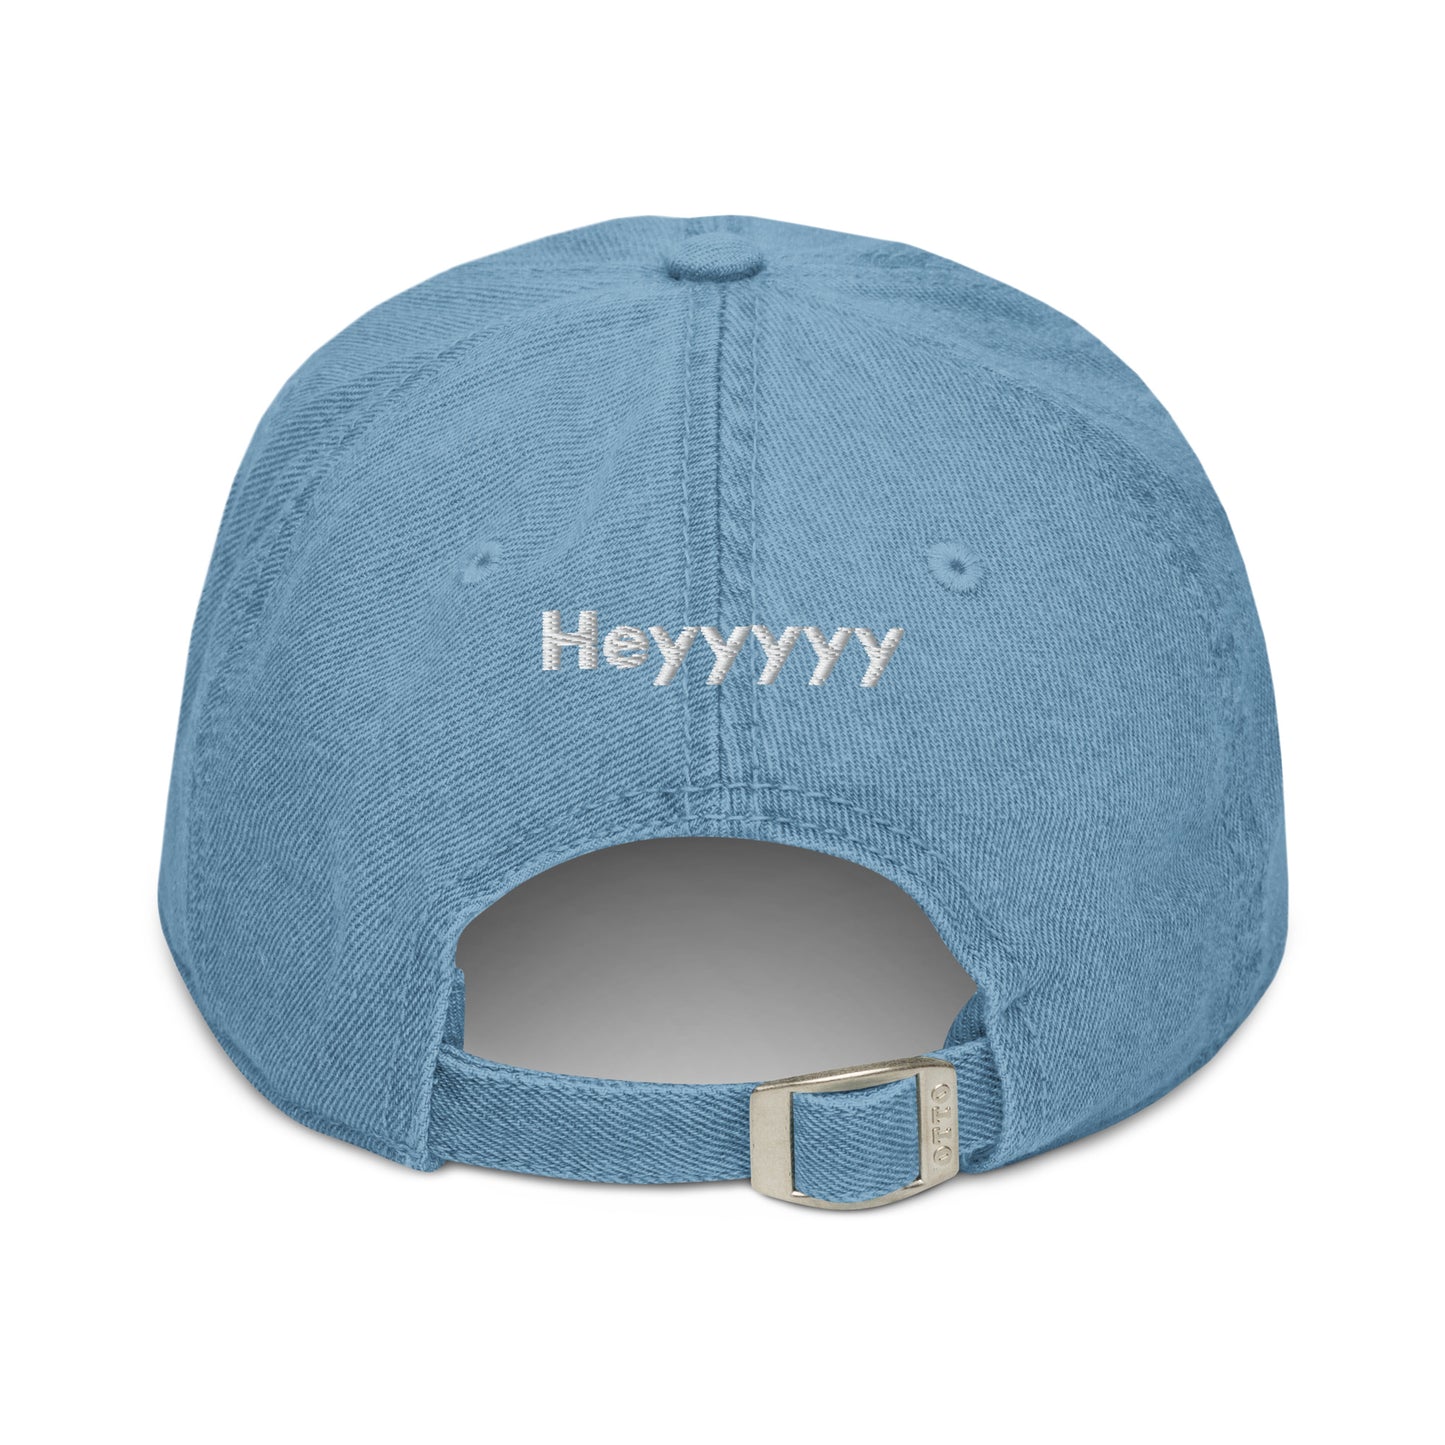 Hi Heyyyyy Denim Hat